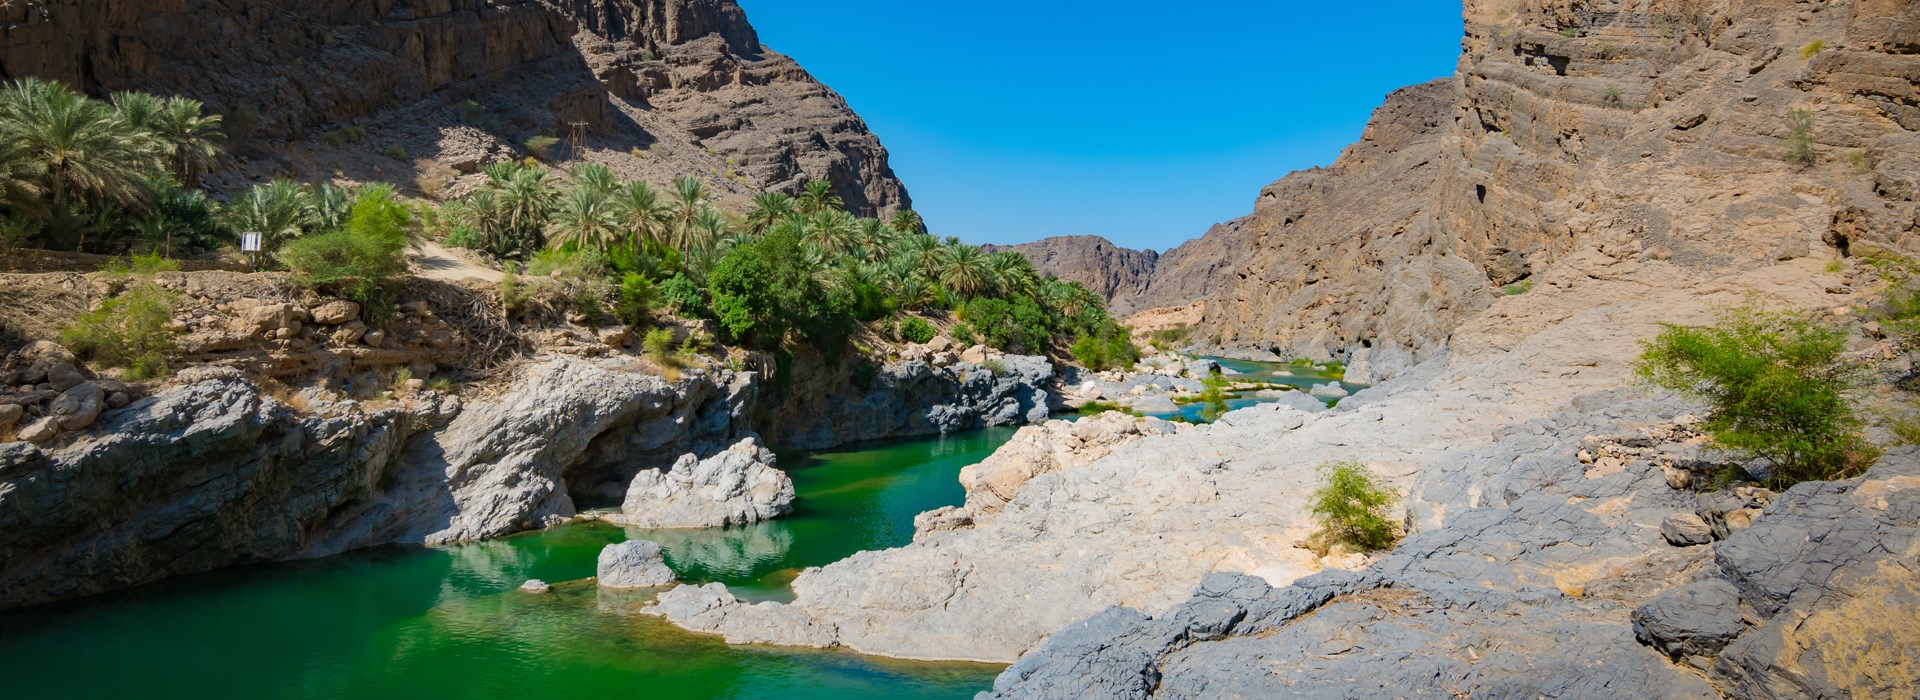 Visiter Wadi Al Arbeieen - Oman